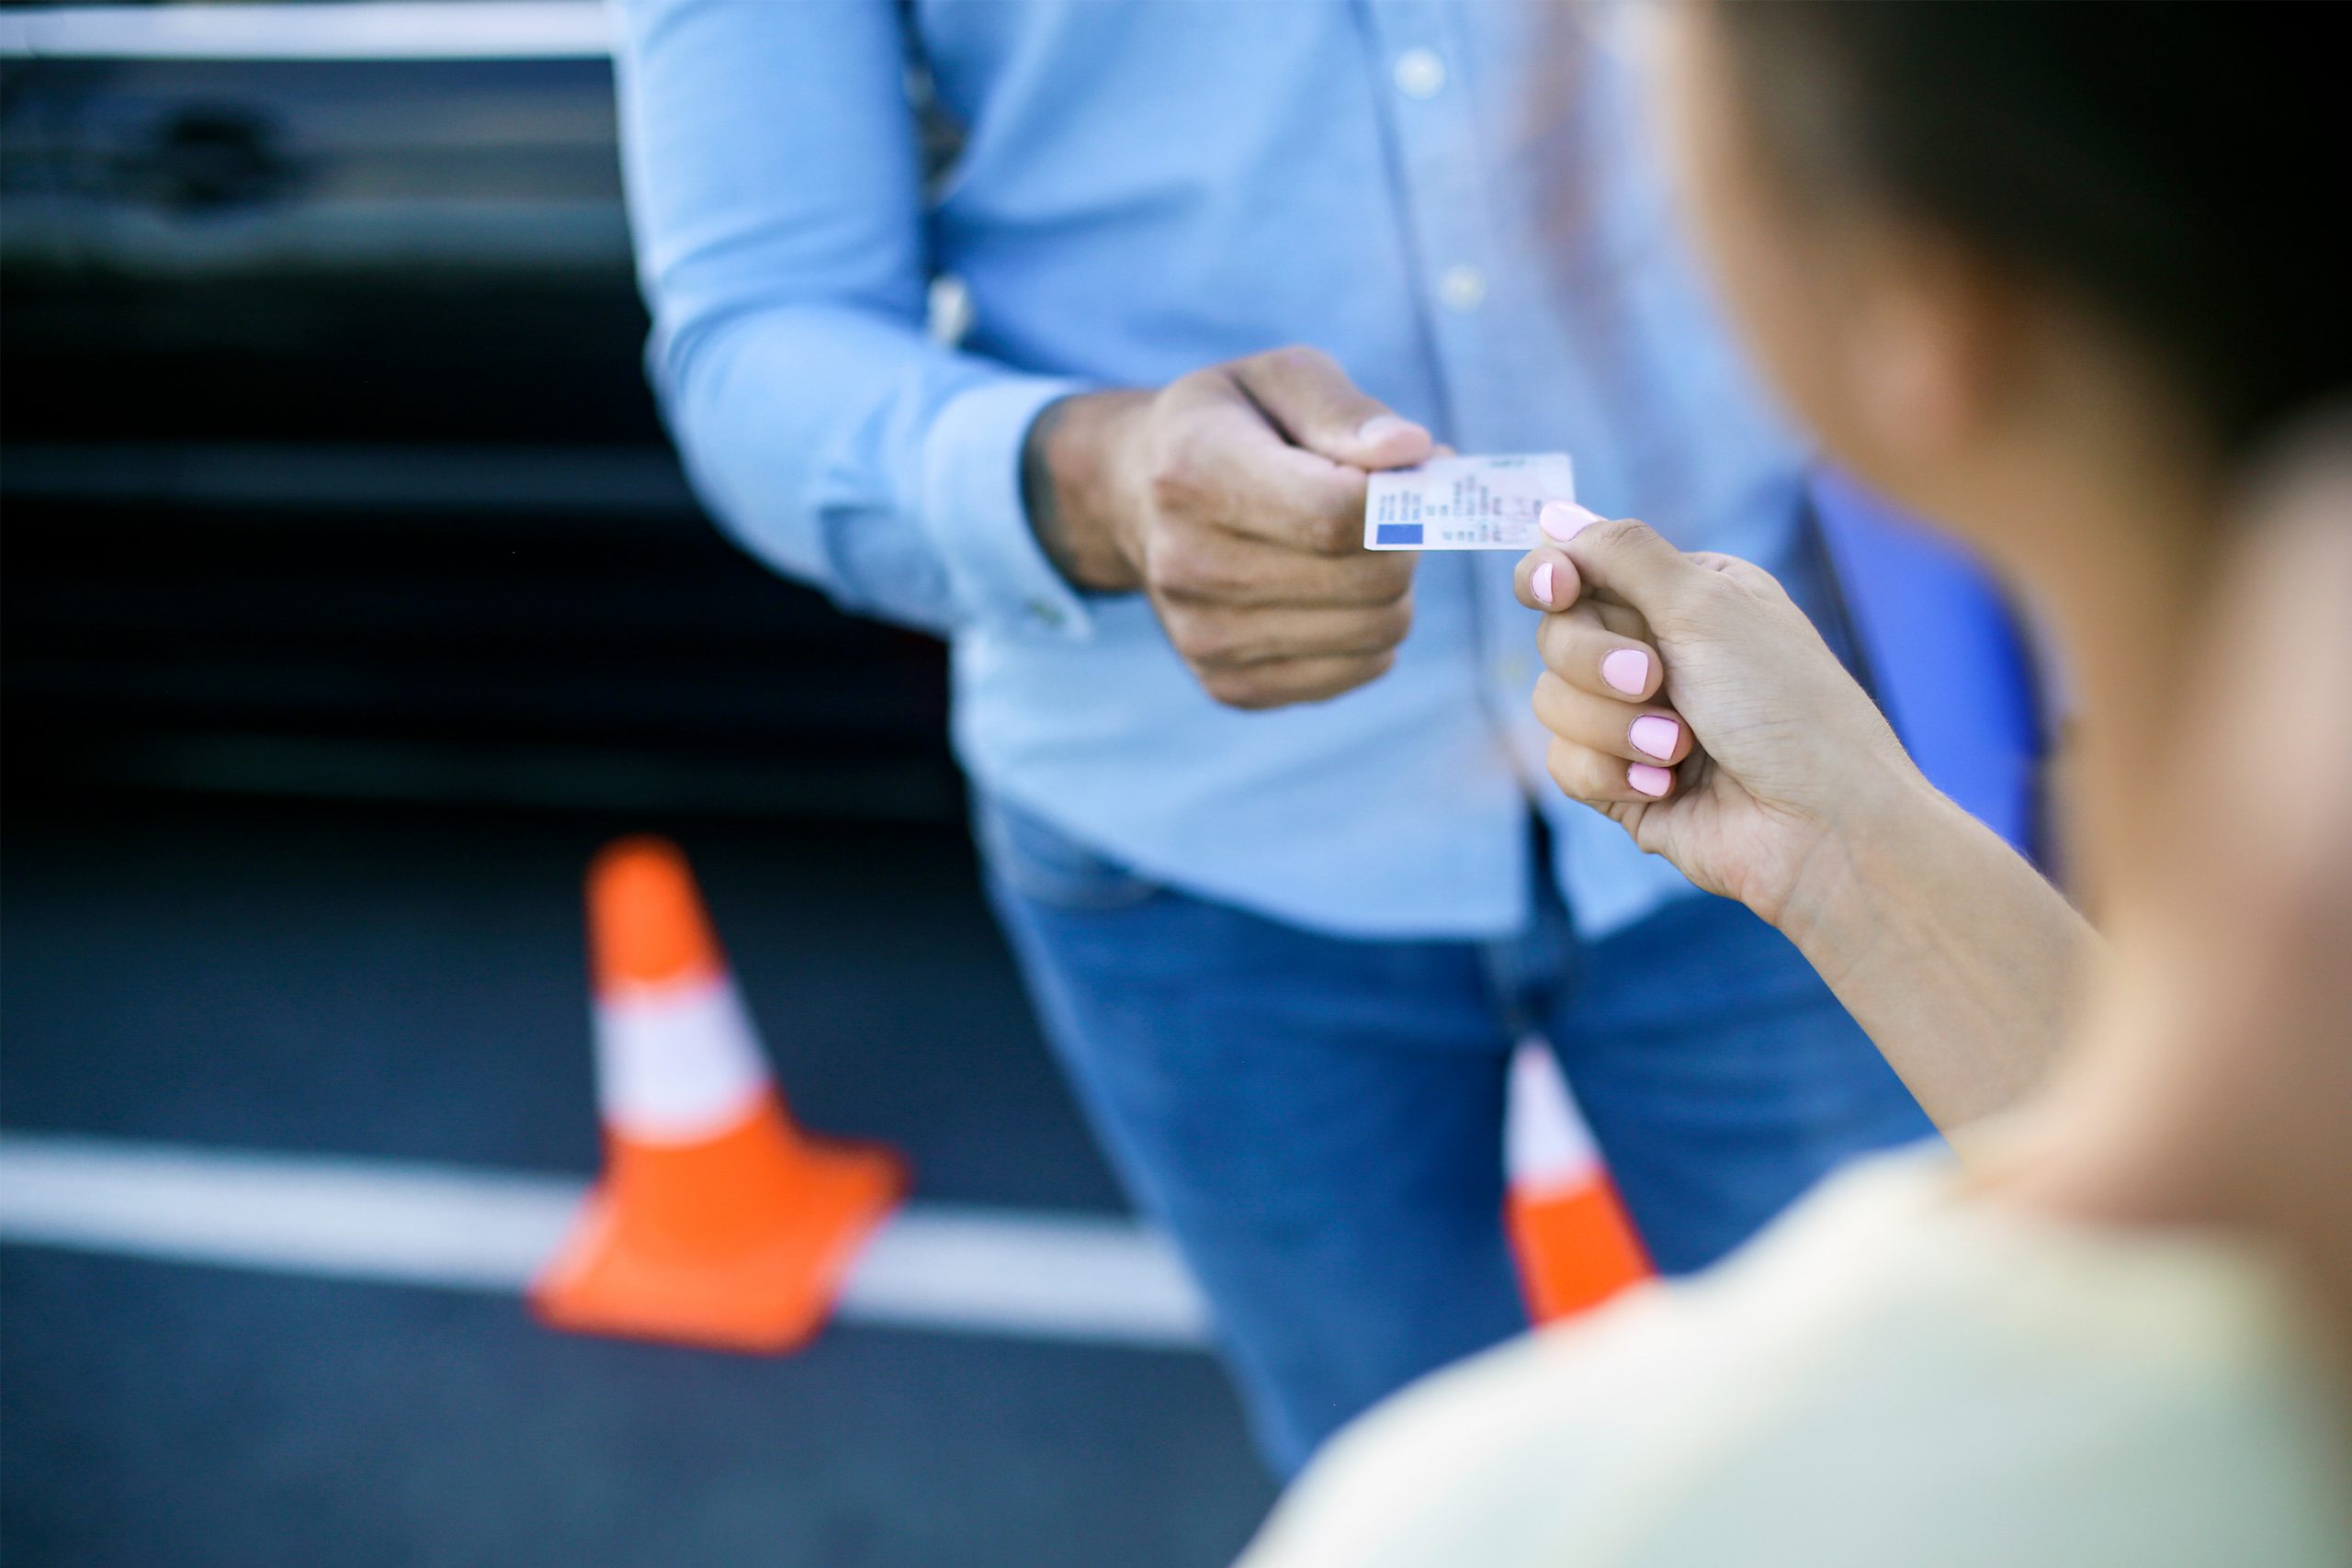 Passage d'examin du permis de conduire, un homme en chemise tant le permis a une femme qu'on apperçoit de dos.